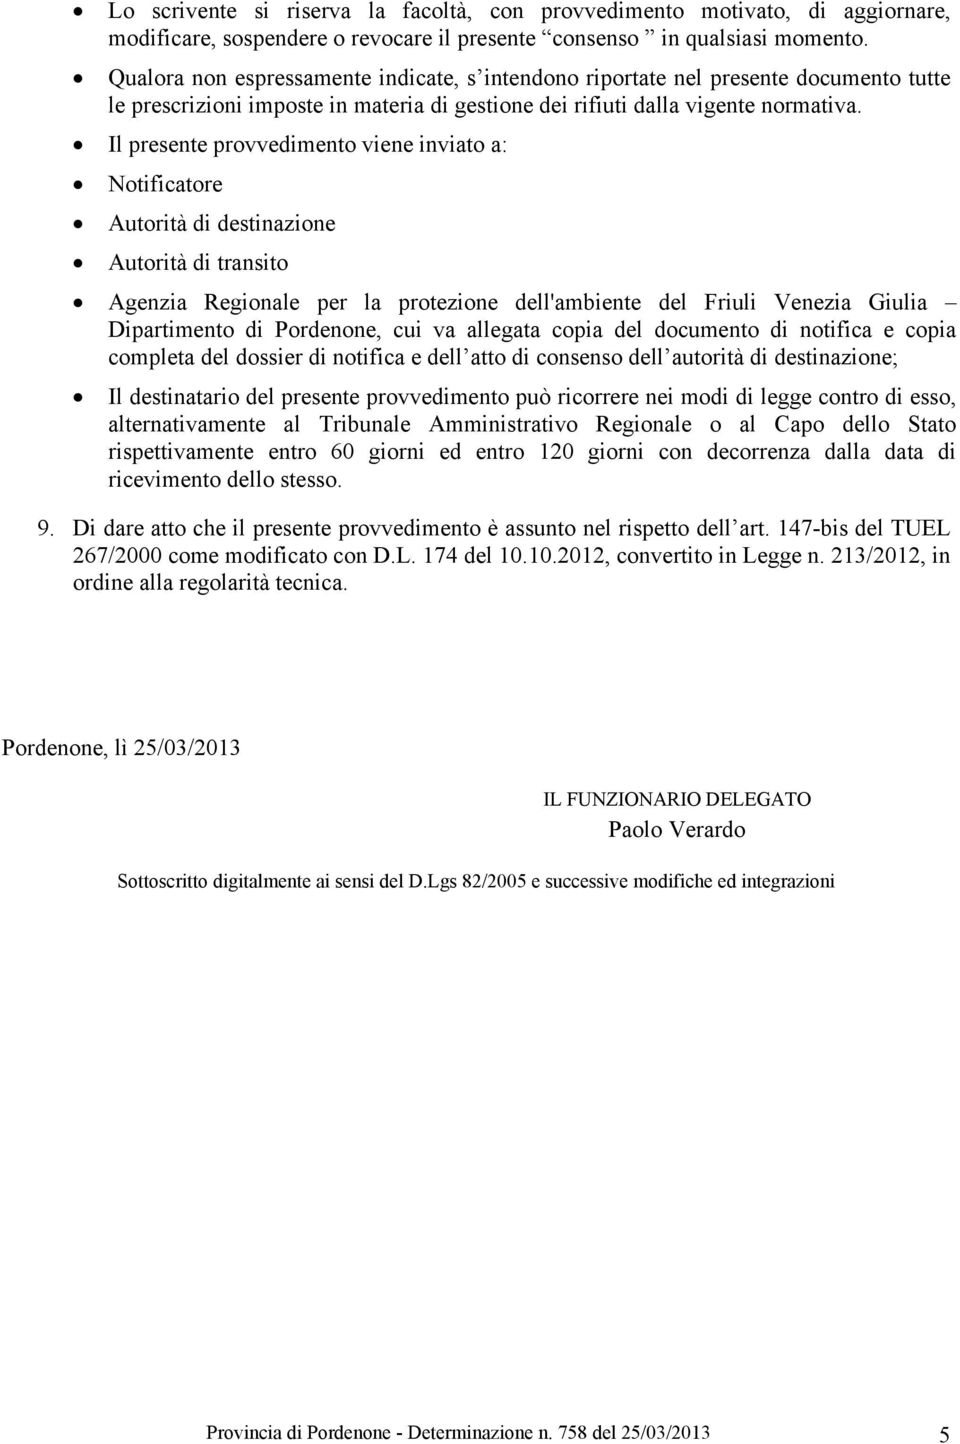 Il presente provvedimento viene inviato a: Notificatore Autorità di destinazione Autorità di transito Agenzia Regionale per la protezione dell'ambiente del Friuli Venezia Giulia Dipartimento di